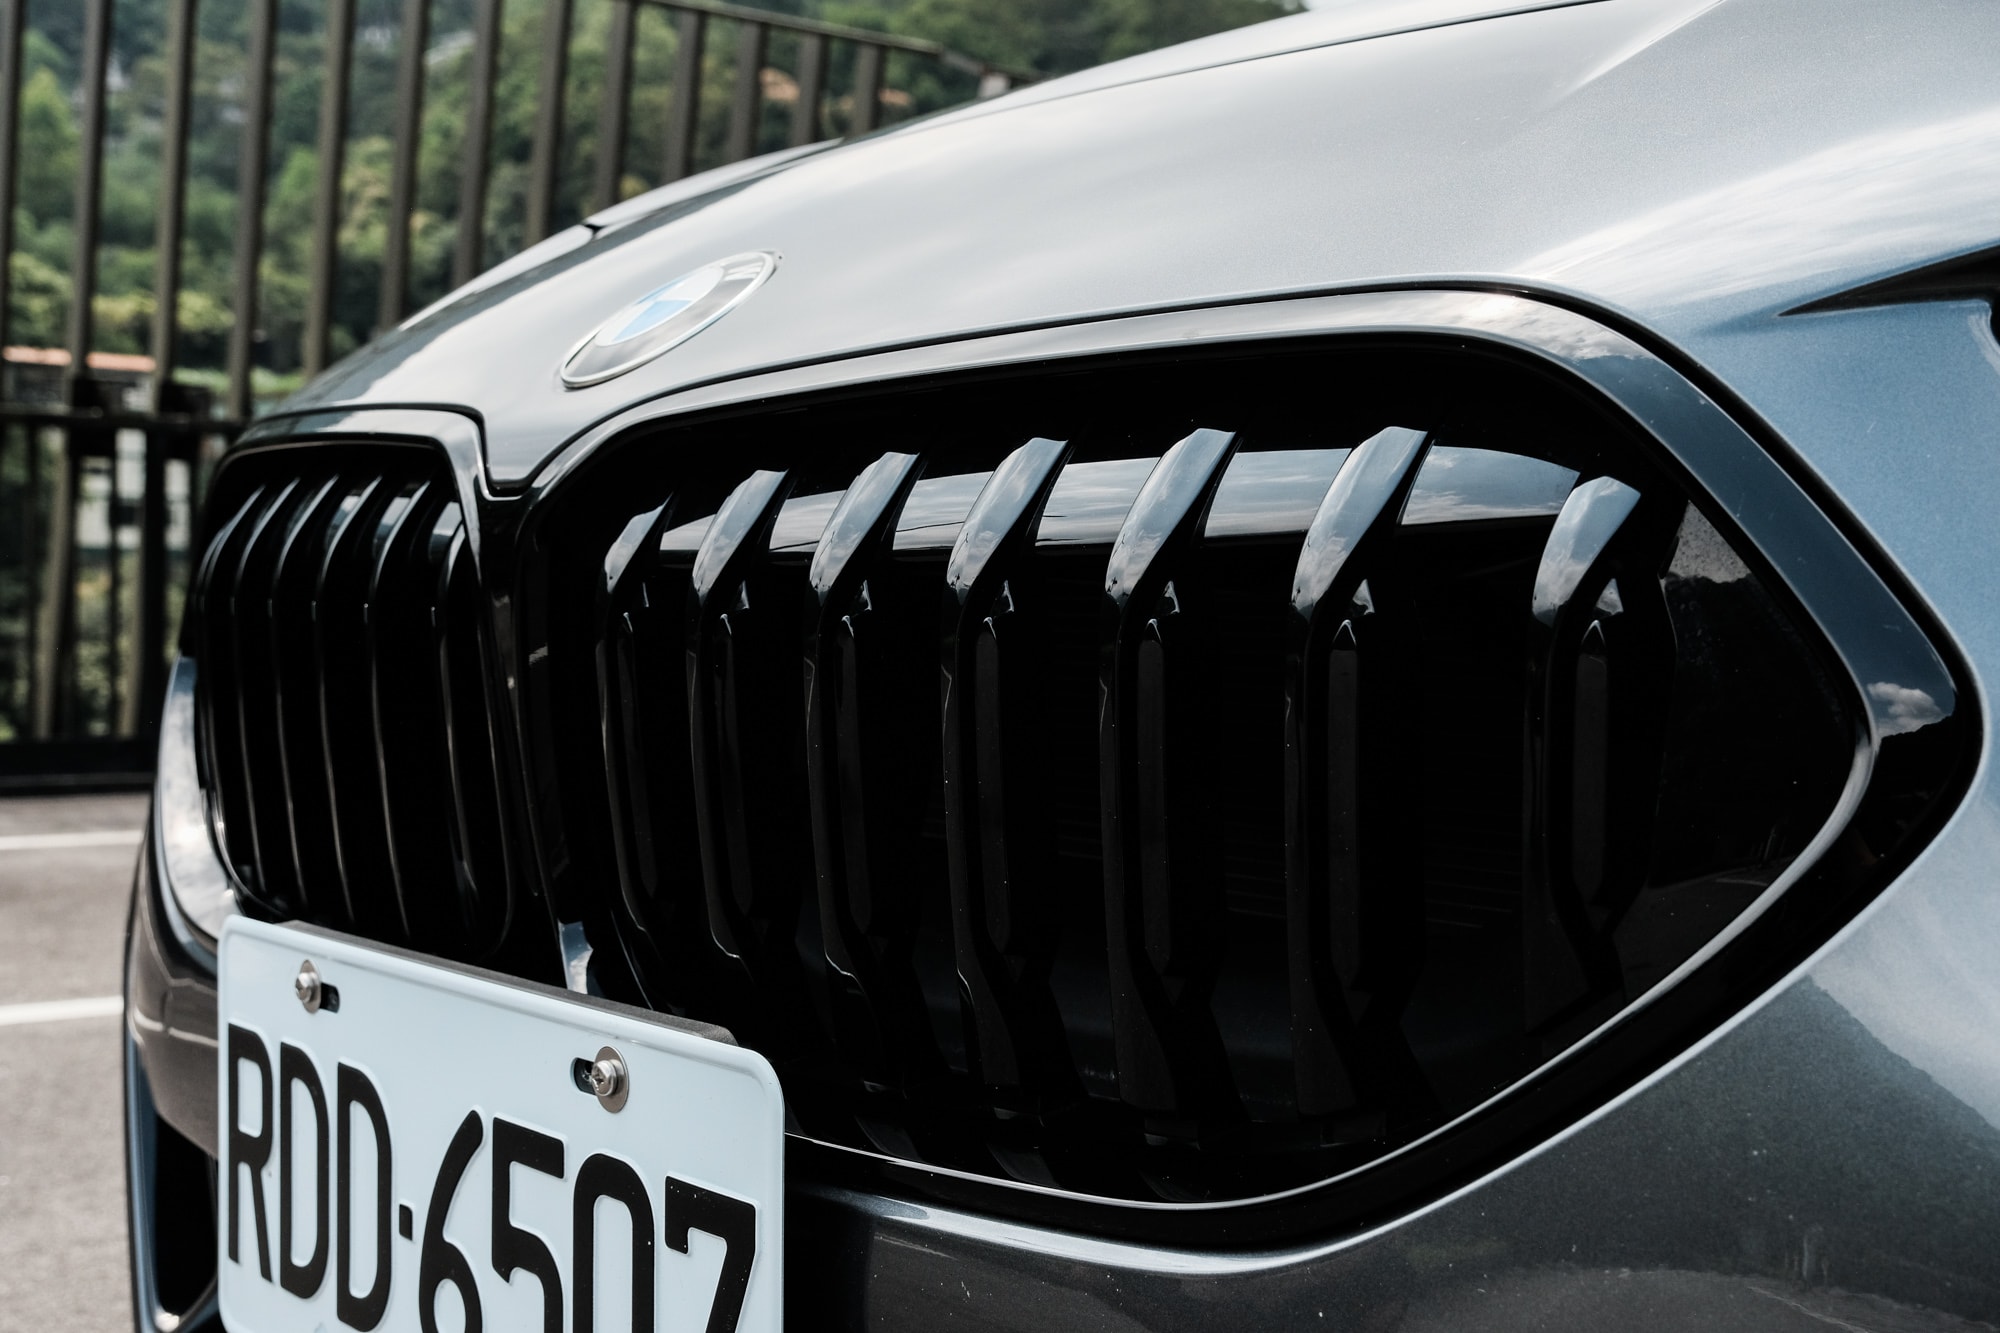 日常跑格兼具 – BMW 全新 220i Gran Coupé Edition M 實測體驗